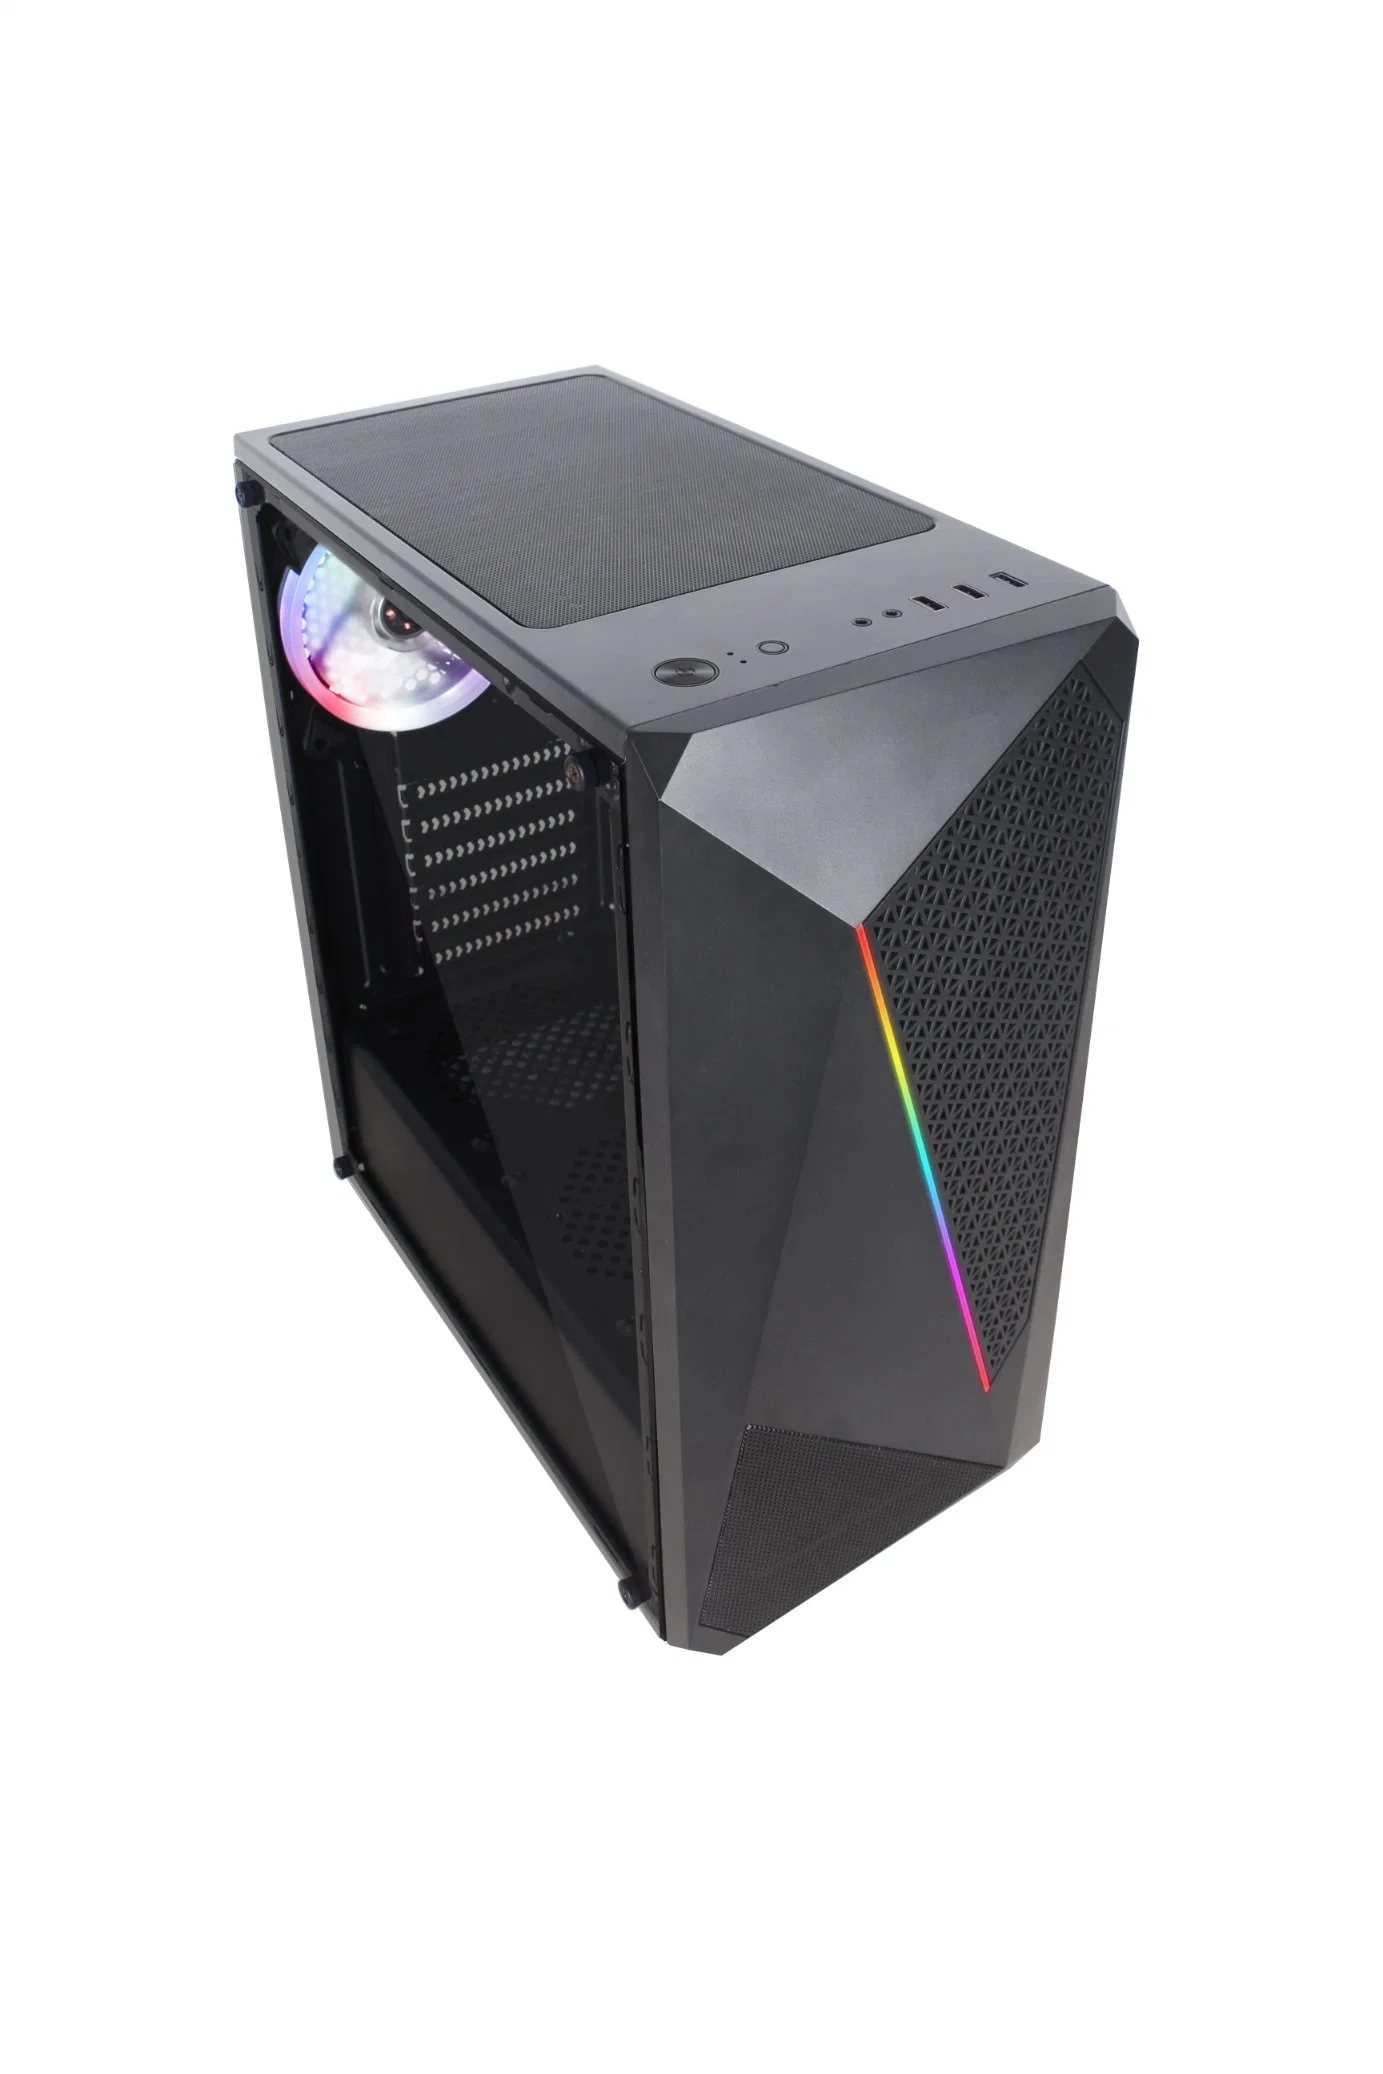 علبة كمبيوتر ATX للألعاب عالية الجودة مزودة بمؤشر LED جذاب RGB تصميم الشرائط